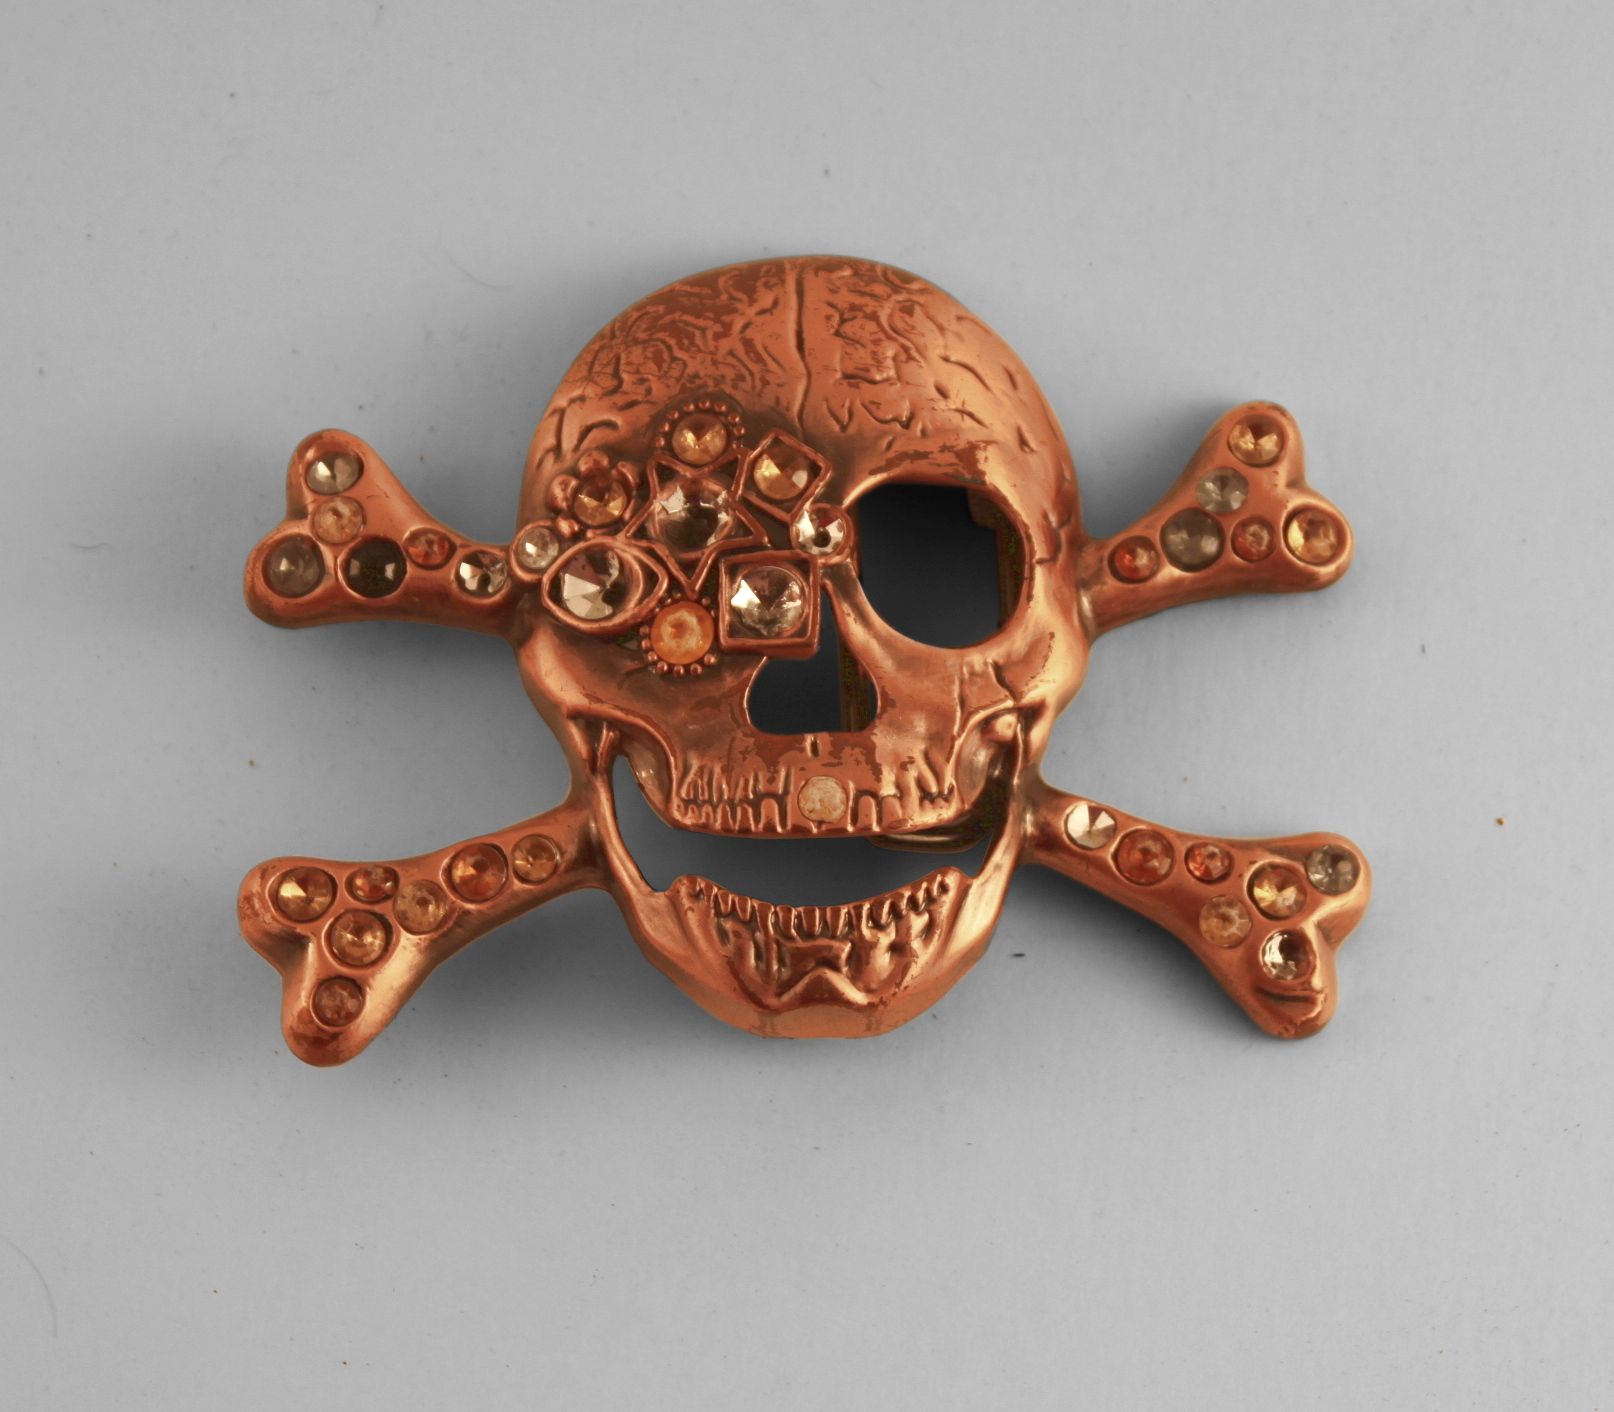 Skull design, metal belt buckle